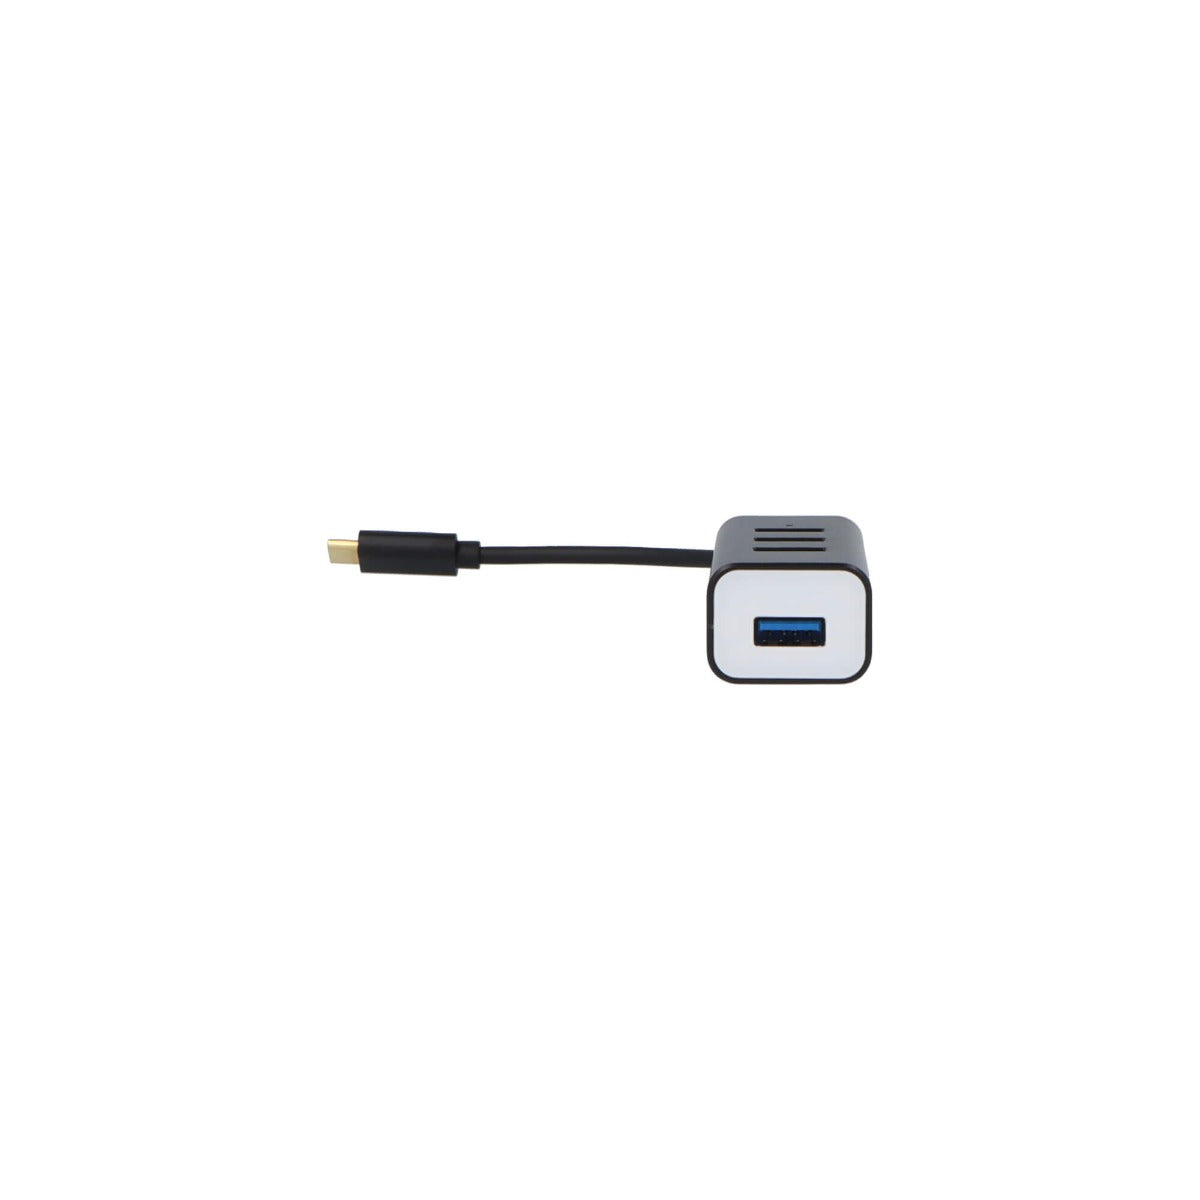 USB-C 4 Port USB 3.0 Hub